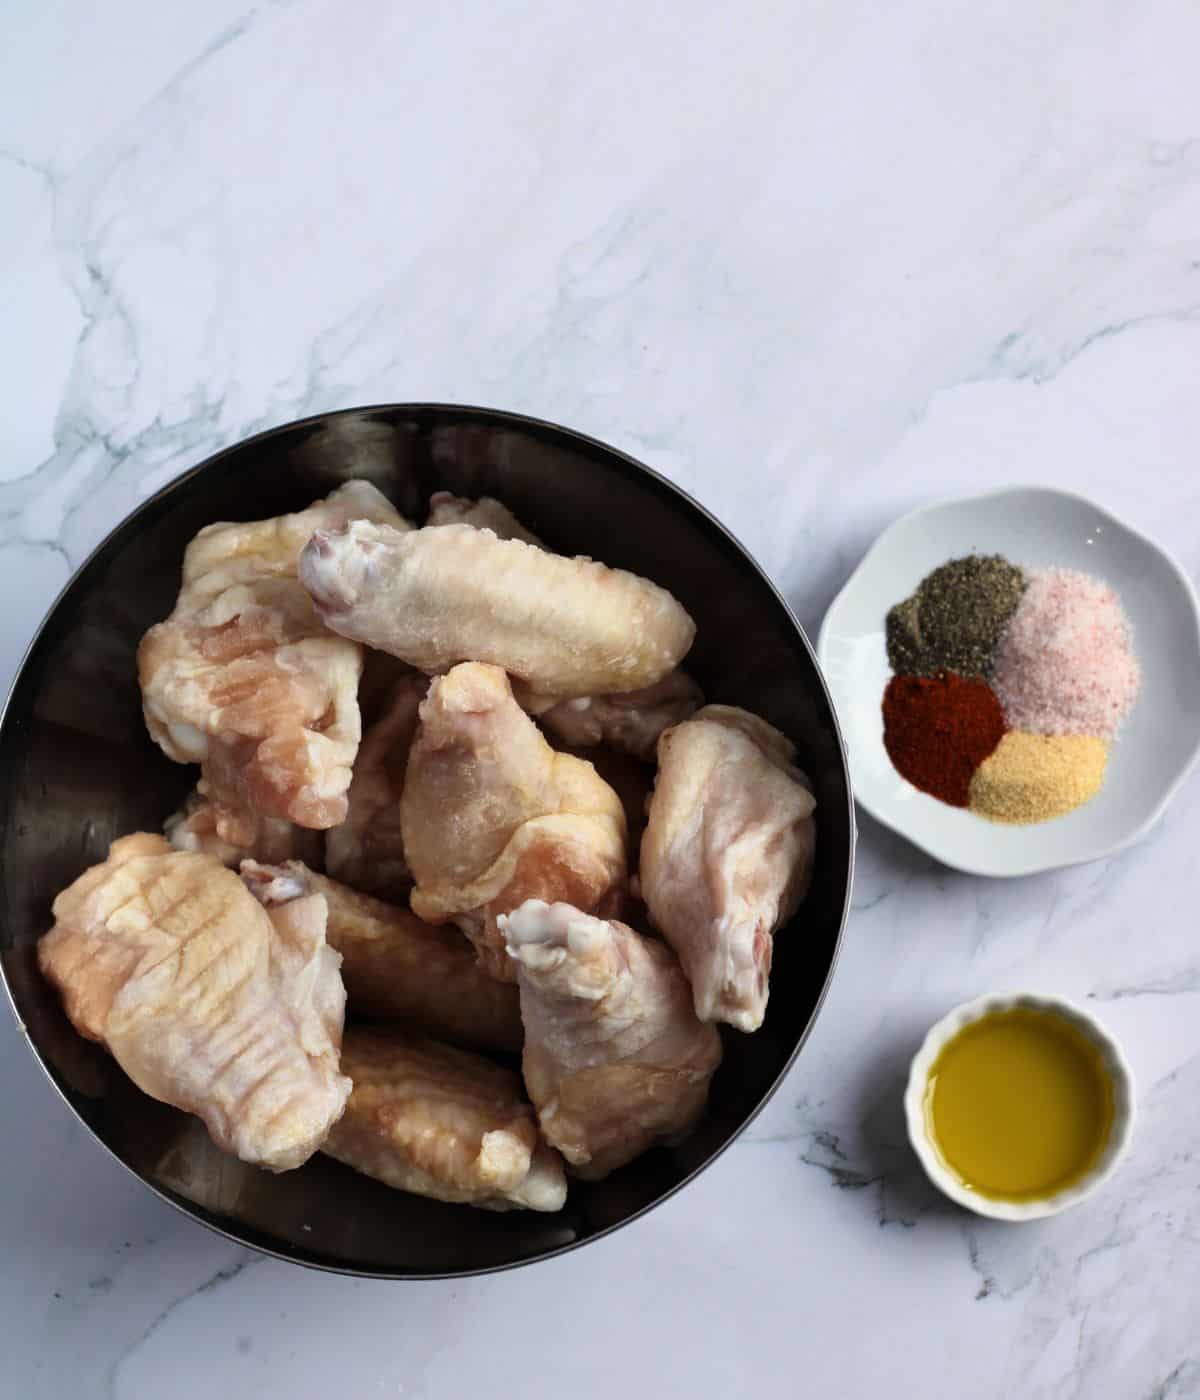 Ingredients and seasonings for air-fryer honey garlic chicken wings.